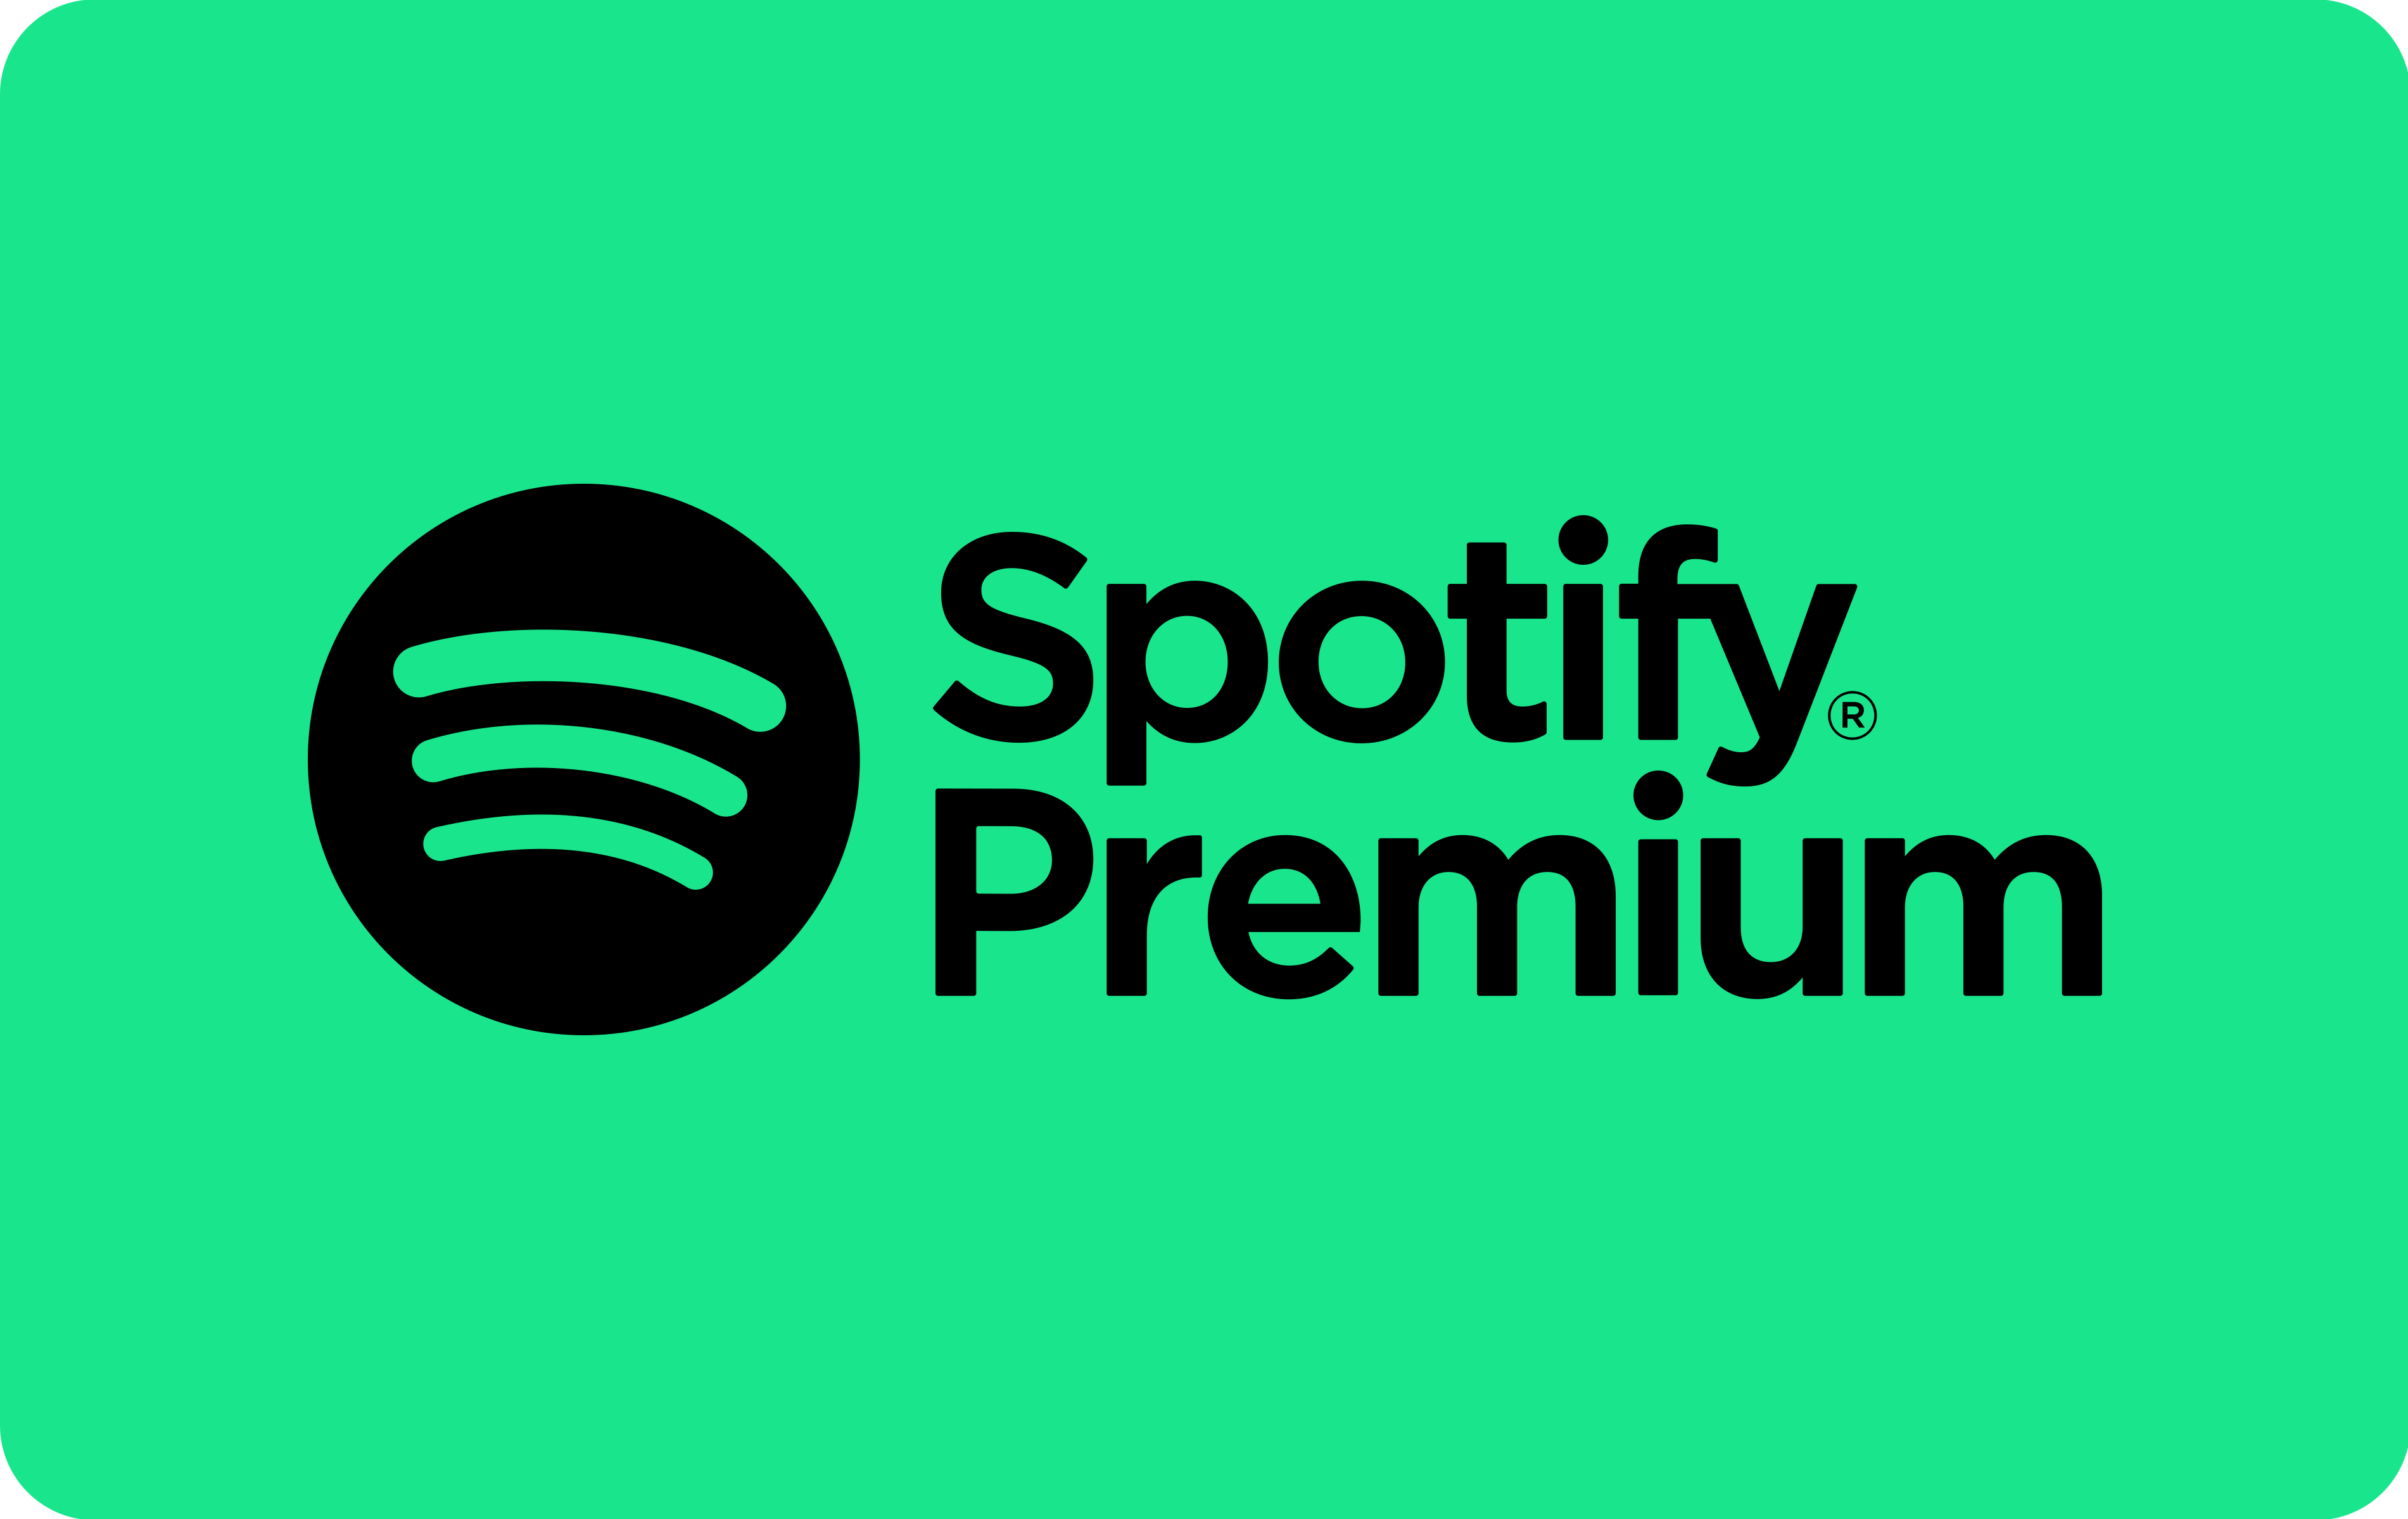 Cartes cadeaux Spotify Premium en réduction